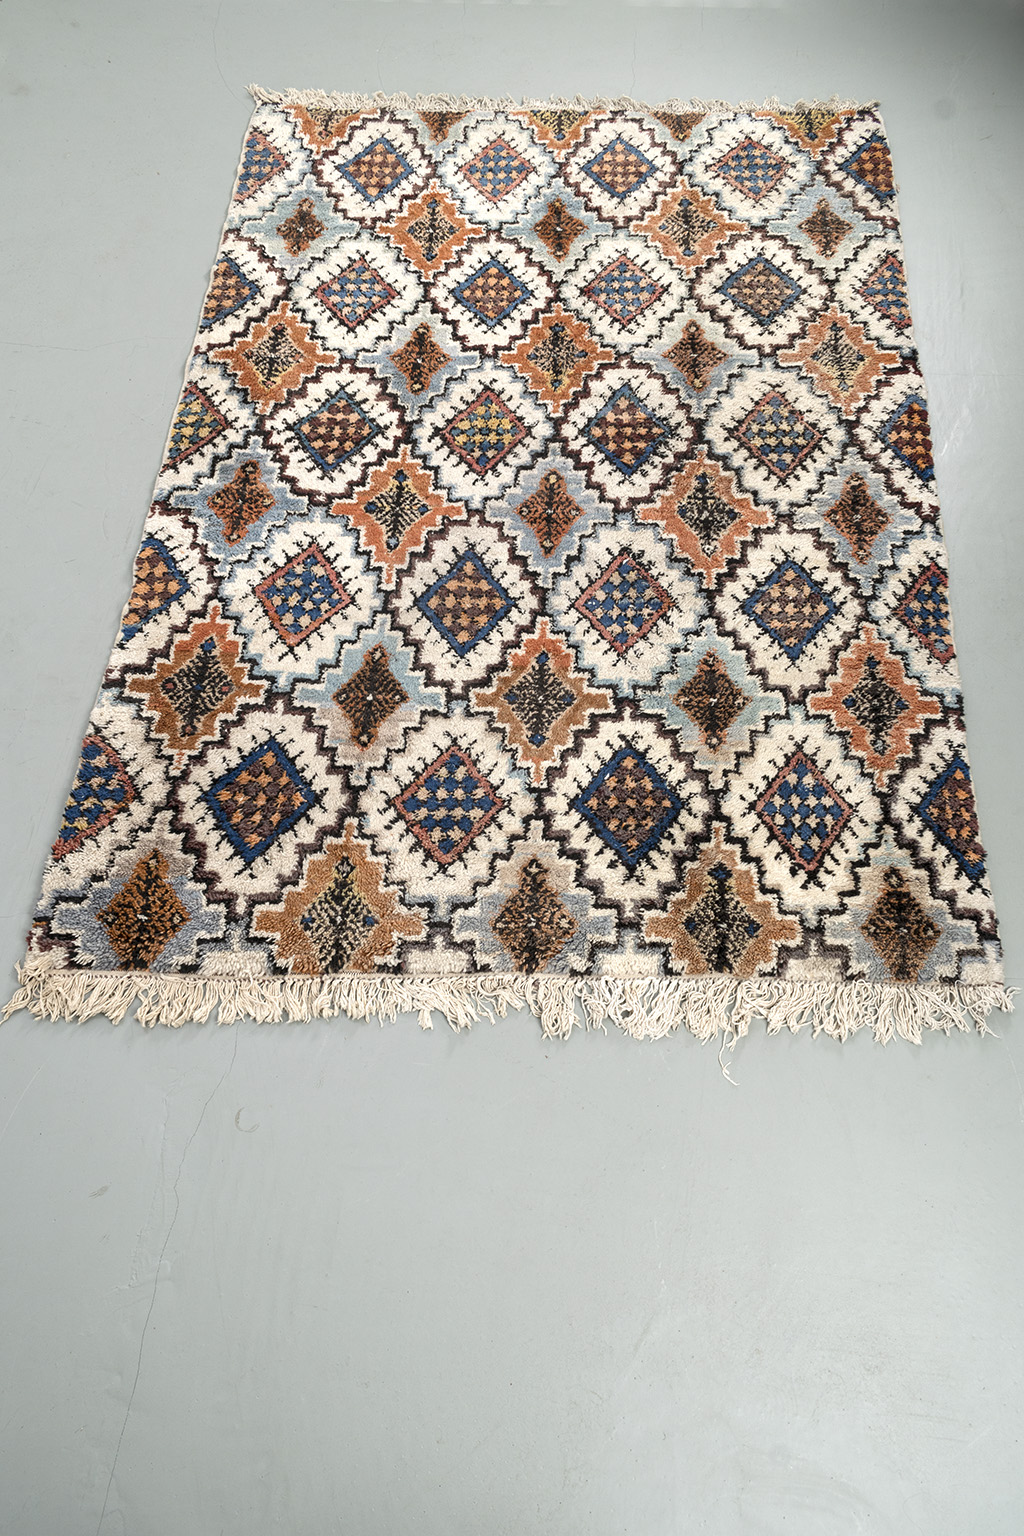 Groot Marokkaans tapijt uit Rabat